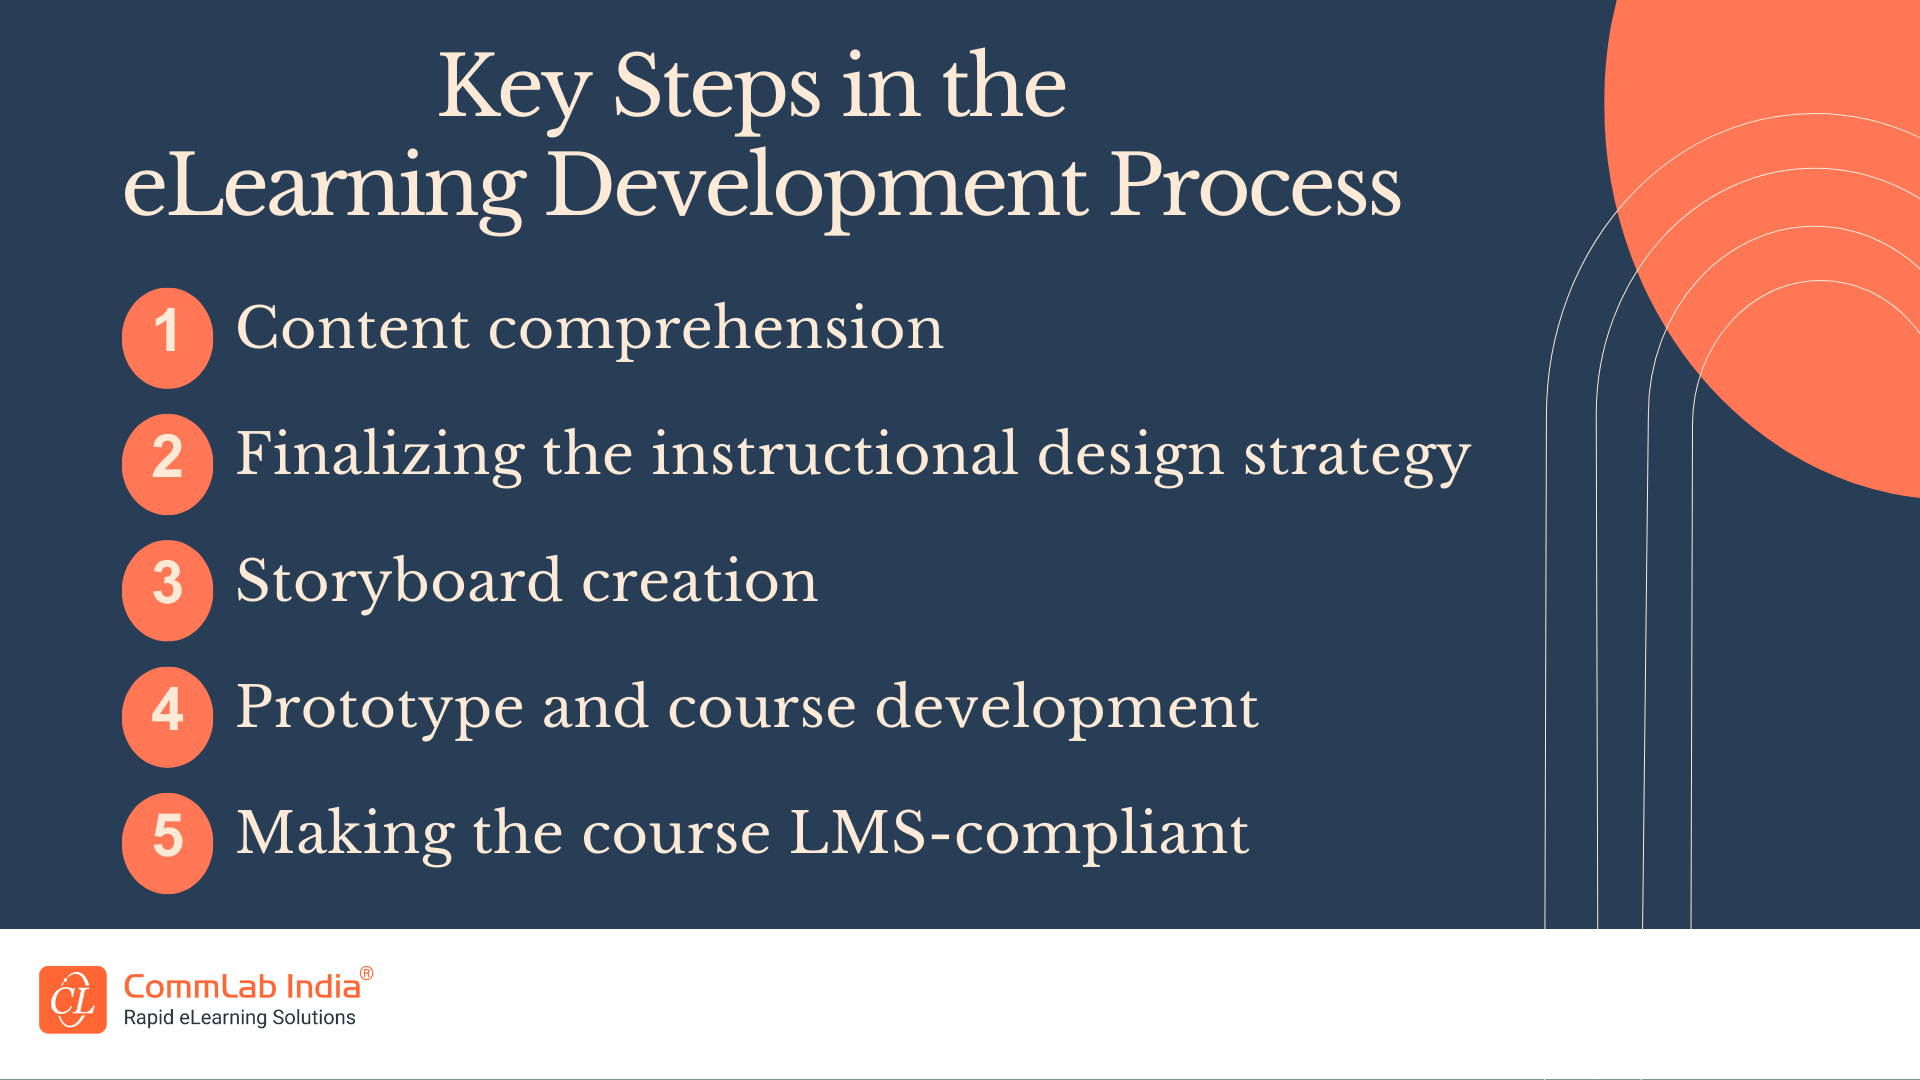 Key Steps in the eLearning Development Process